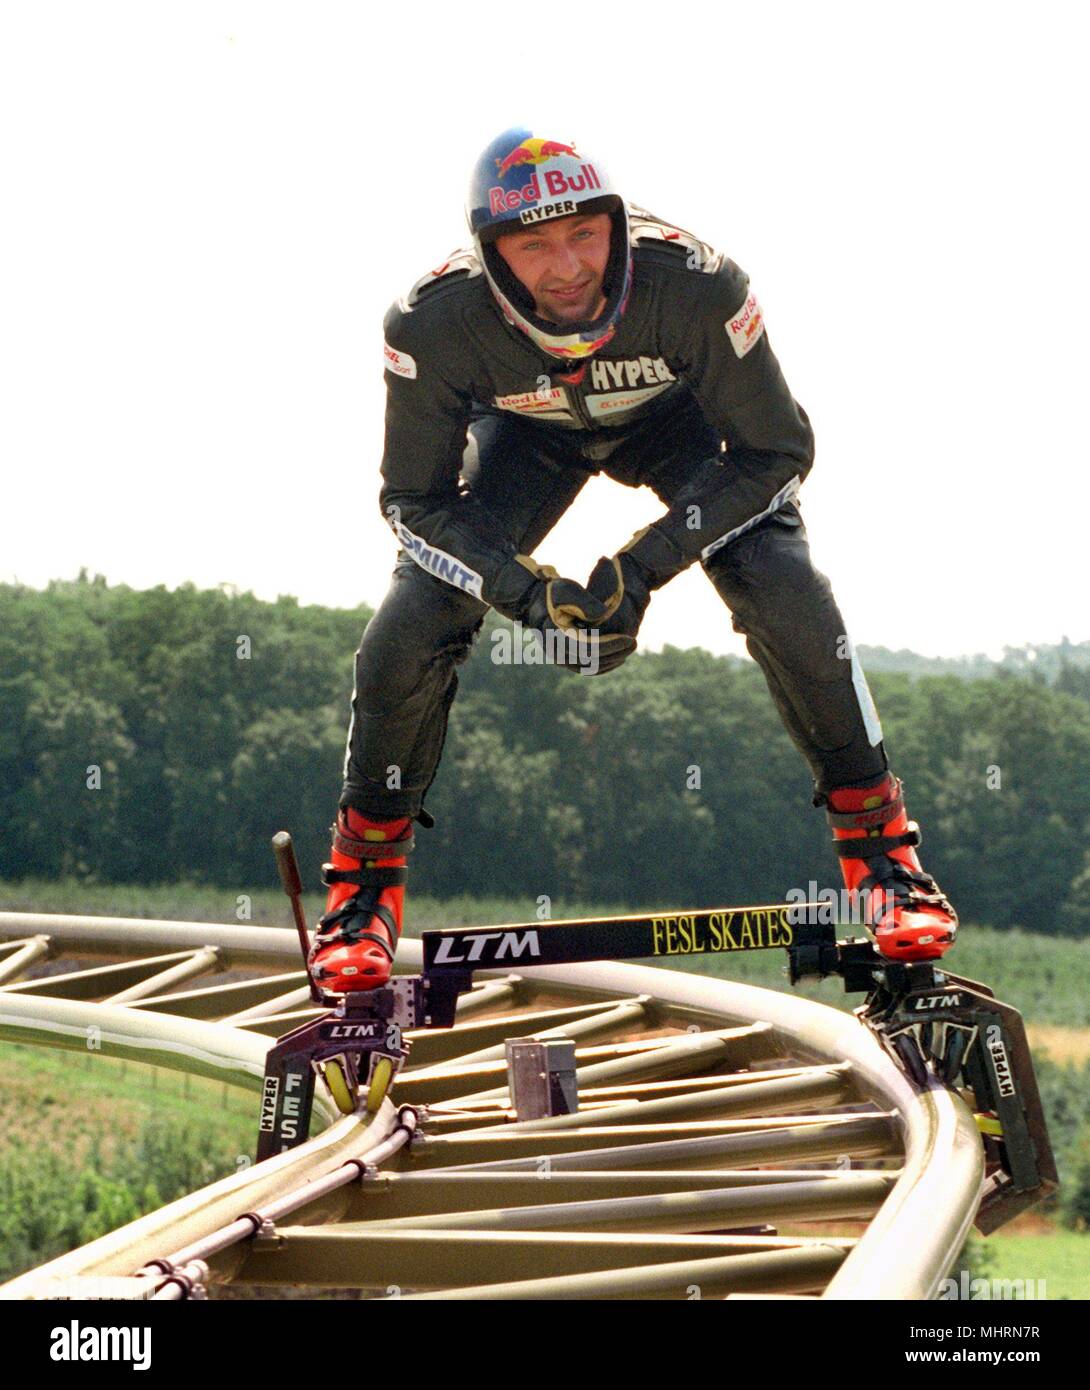 Un nouveau record de vitesse sur patins à Dirk Auer, détenteur du record du monde en grande vitesse de roller, à l'ouverture d'une nouvelle montagne russe dans le parc d'attractions de Neckarwestheim sur 22.7.1998 Accueil mis en place. Mais Auer n'ont pas eu de chance : le jeune homme de 26 ans a perdu l'équilibre à 70 km/h et a subi de graves coccyx contusion au cours de l'automne. Il ne pouvait pas s'écraser, parce que ses patins sont solidement attachés à la montagne russe de rails. De plus, avec 307 kilomètres par heure, le haut-débit d'enregistrement les patineurs, 'tiré sur une voie". Maintenant il veut contester sa chance dans deux semaines et demi sur le Berchtes Banque D'Images